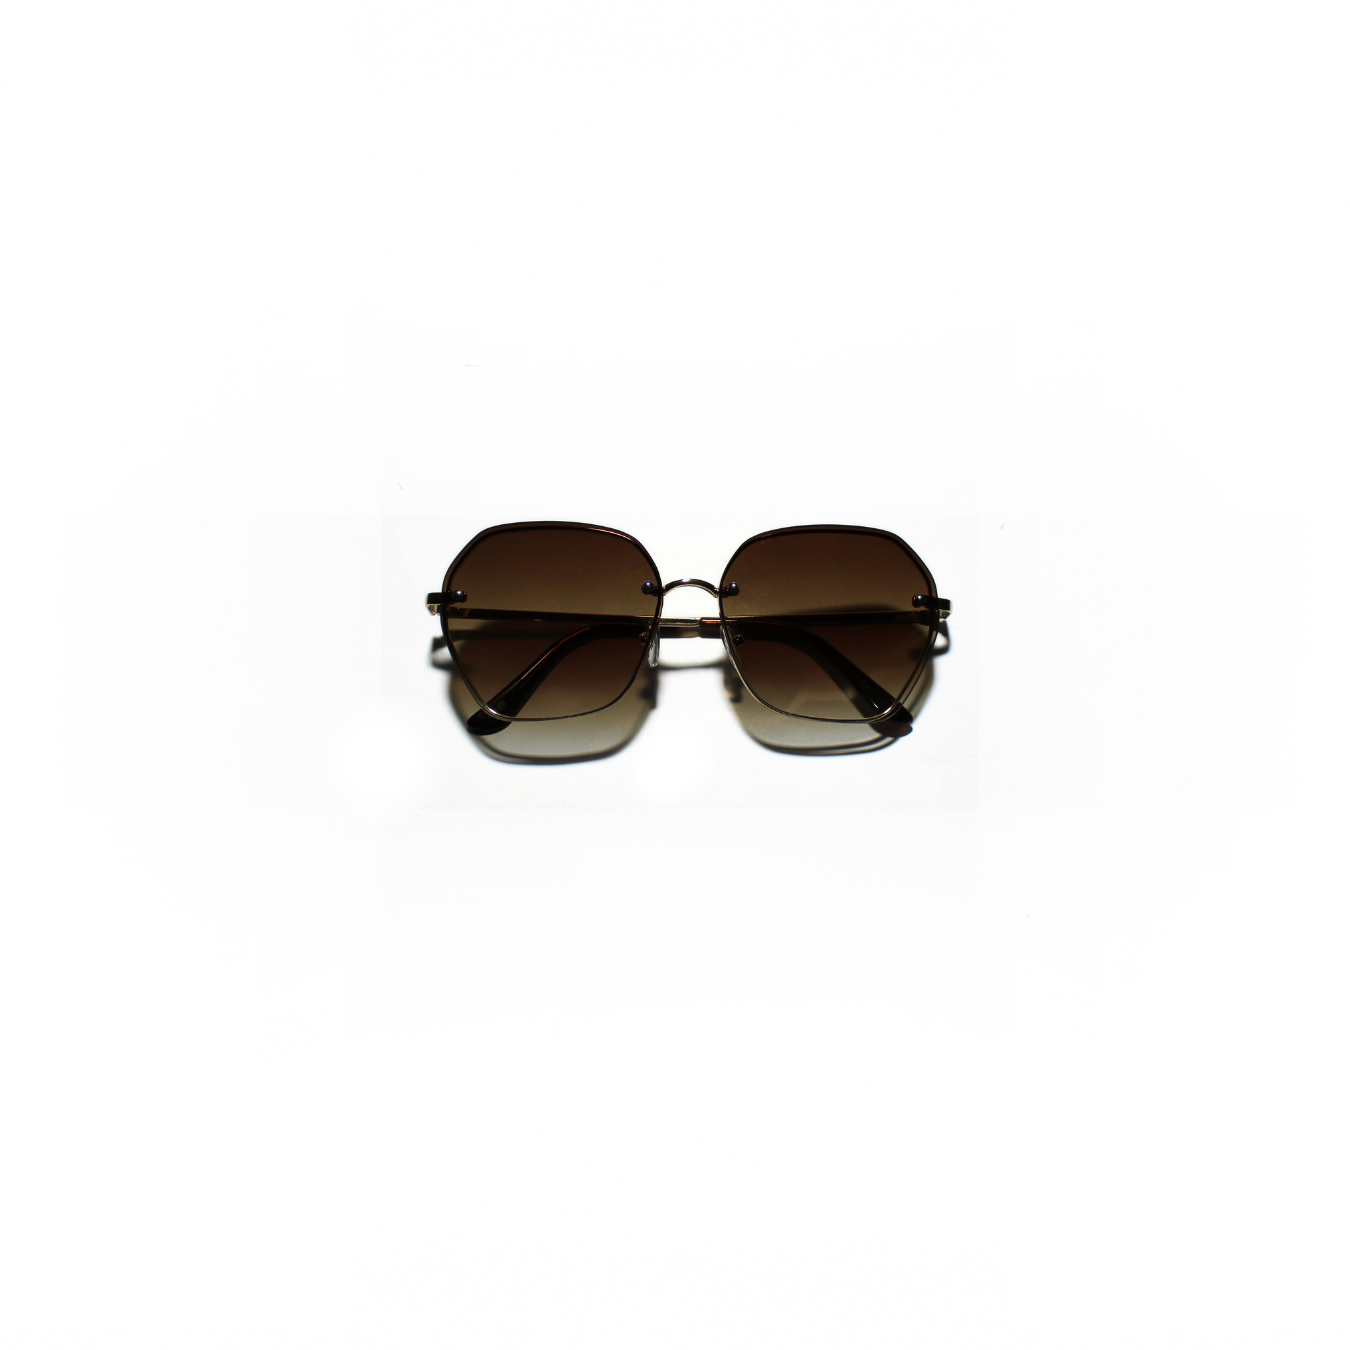 ADRIA 004 I Sunglasses for Women - Specsview